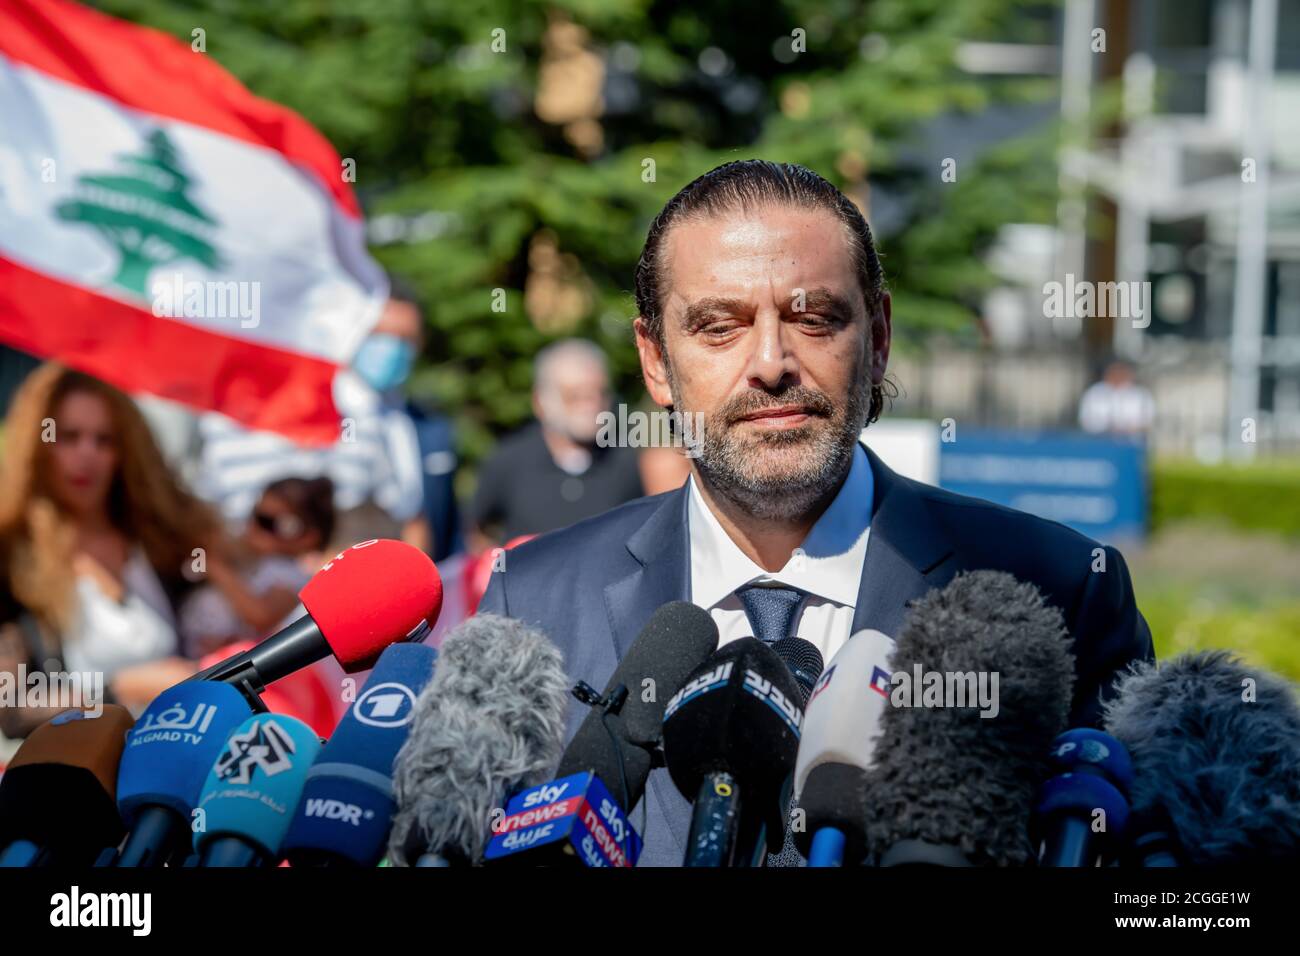 LEIDSCHENDAM, 18 agosto 2020 - Saad Hariri, ex primo ministro libanese, commenta la sentenza del Tribunale speciale per il Libano sul padre Rafik Hariri Foto Stock